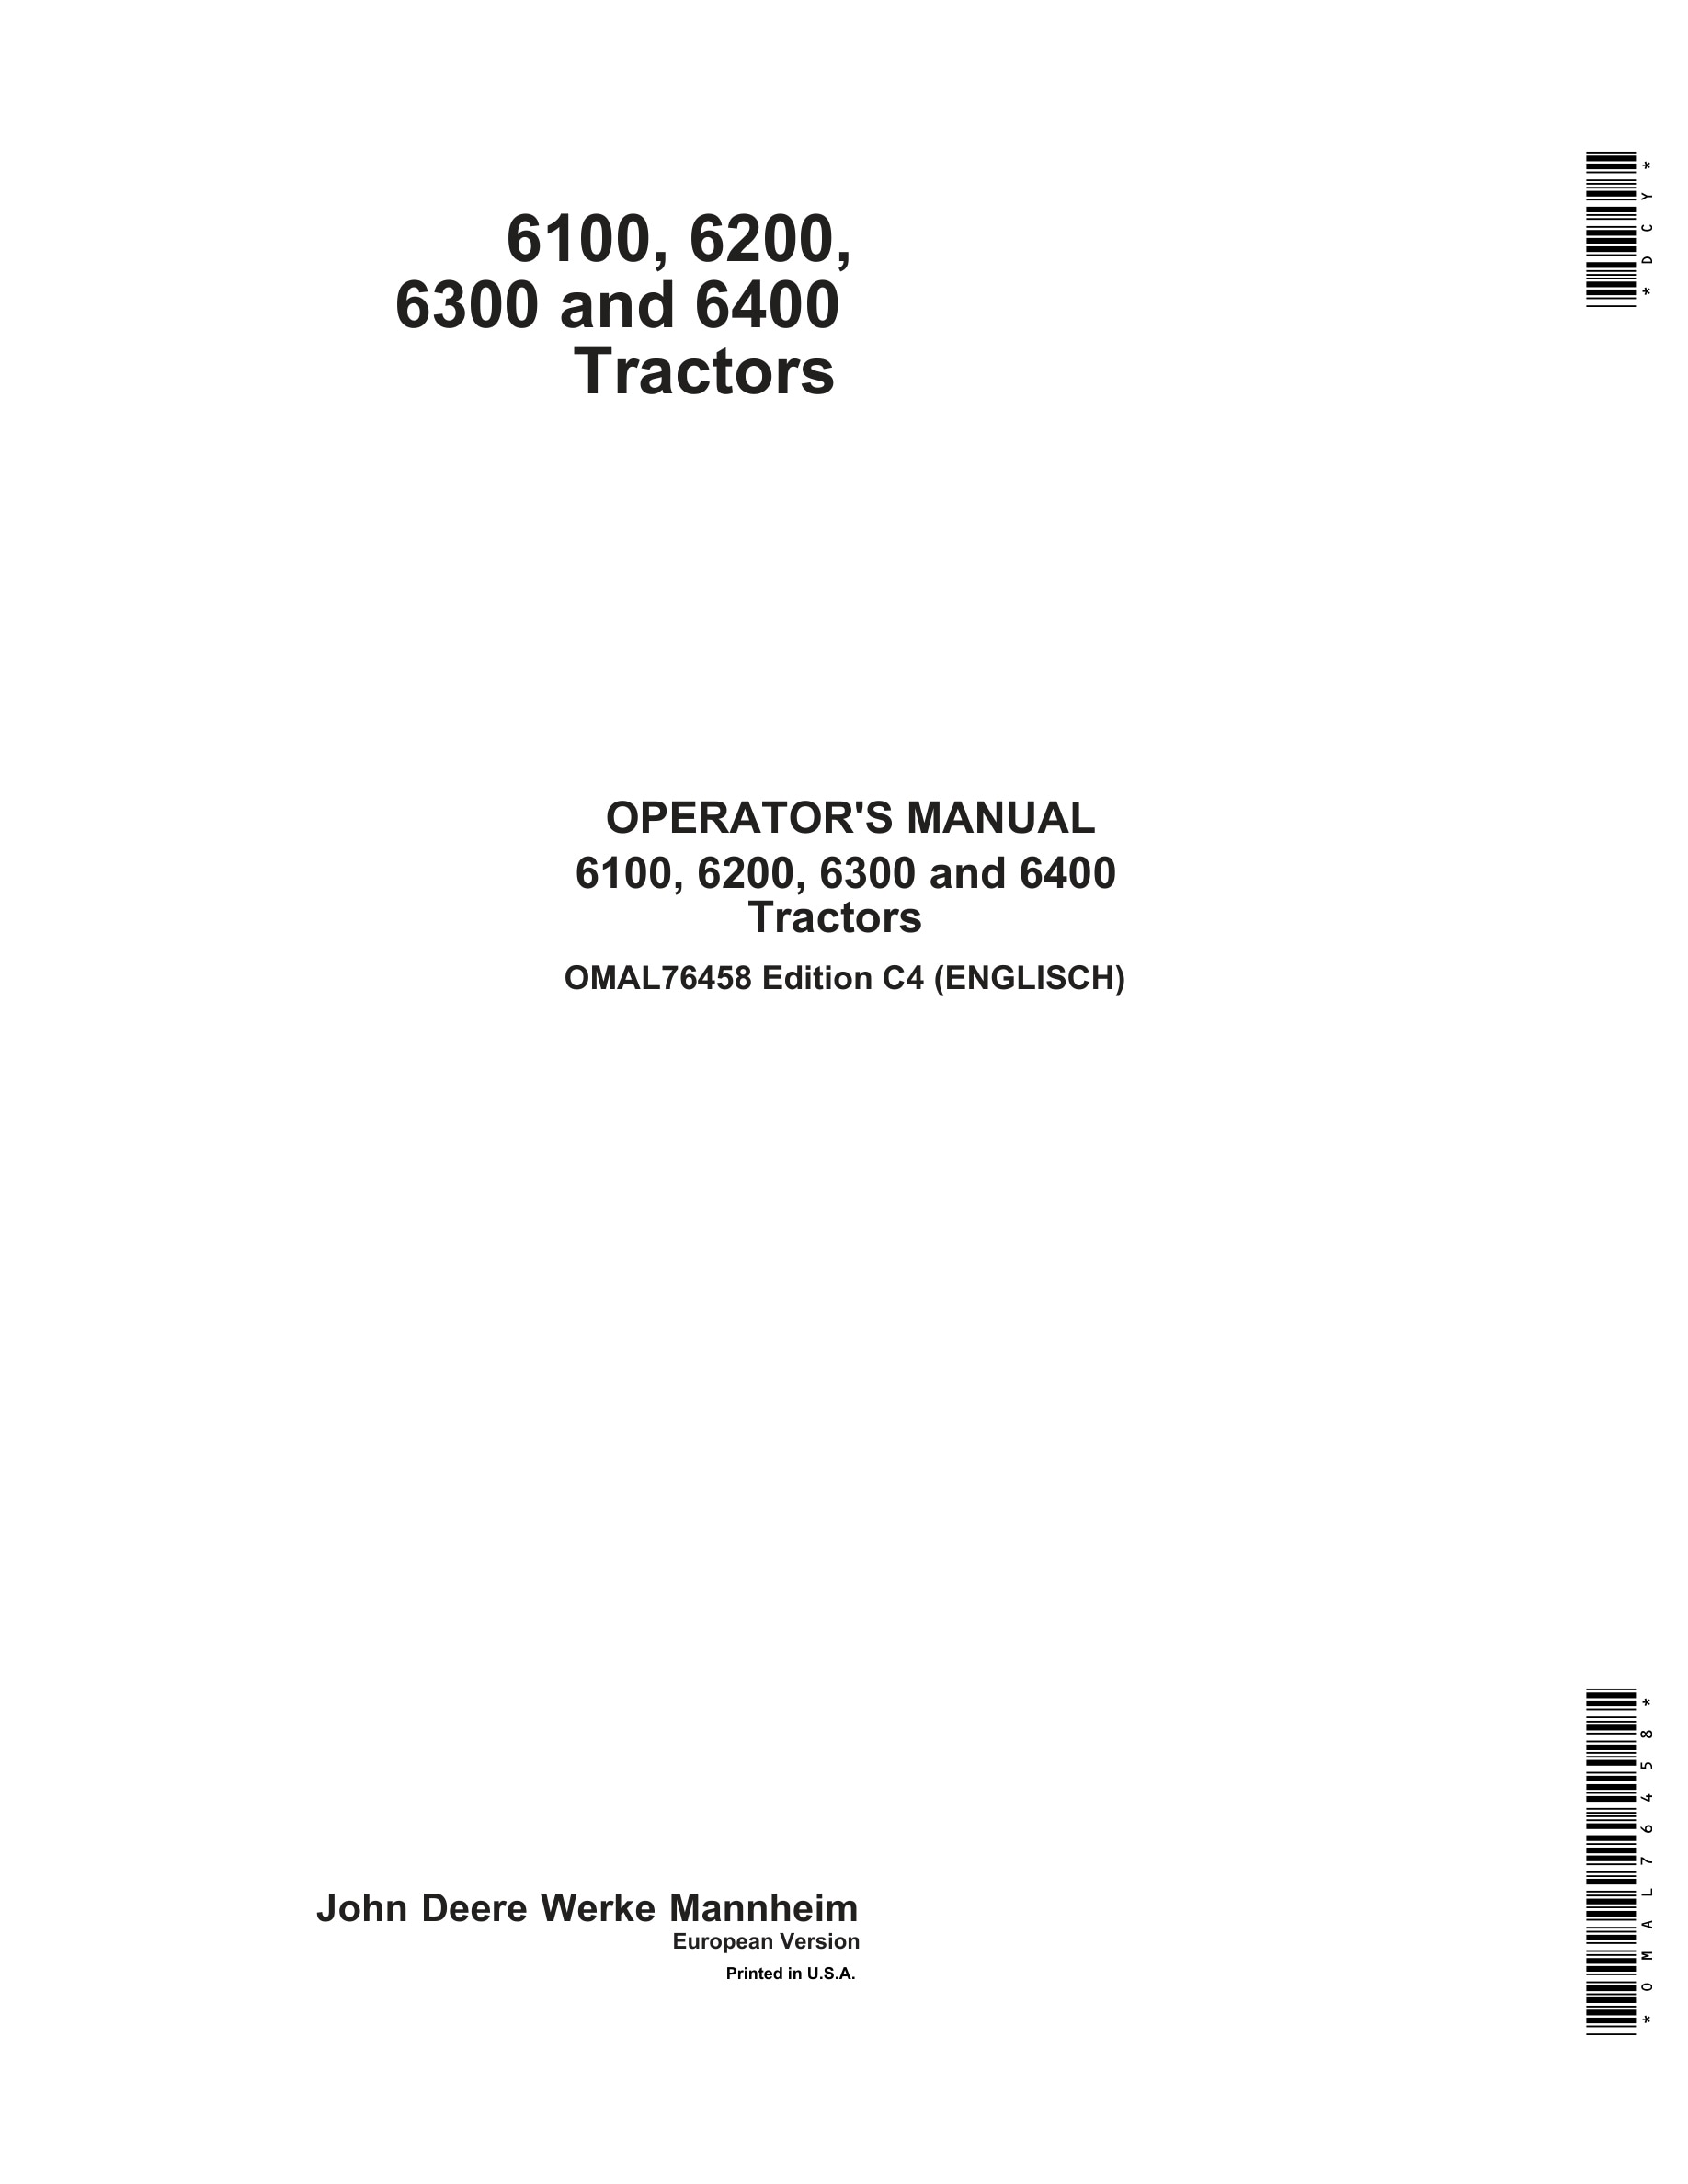 John Deere 6100 6200 6300 6400 Tractors Operator Manual OMAL76458-1